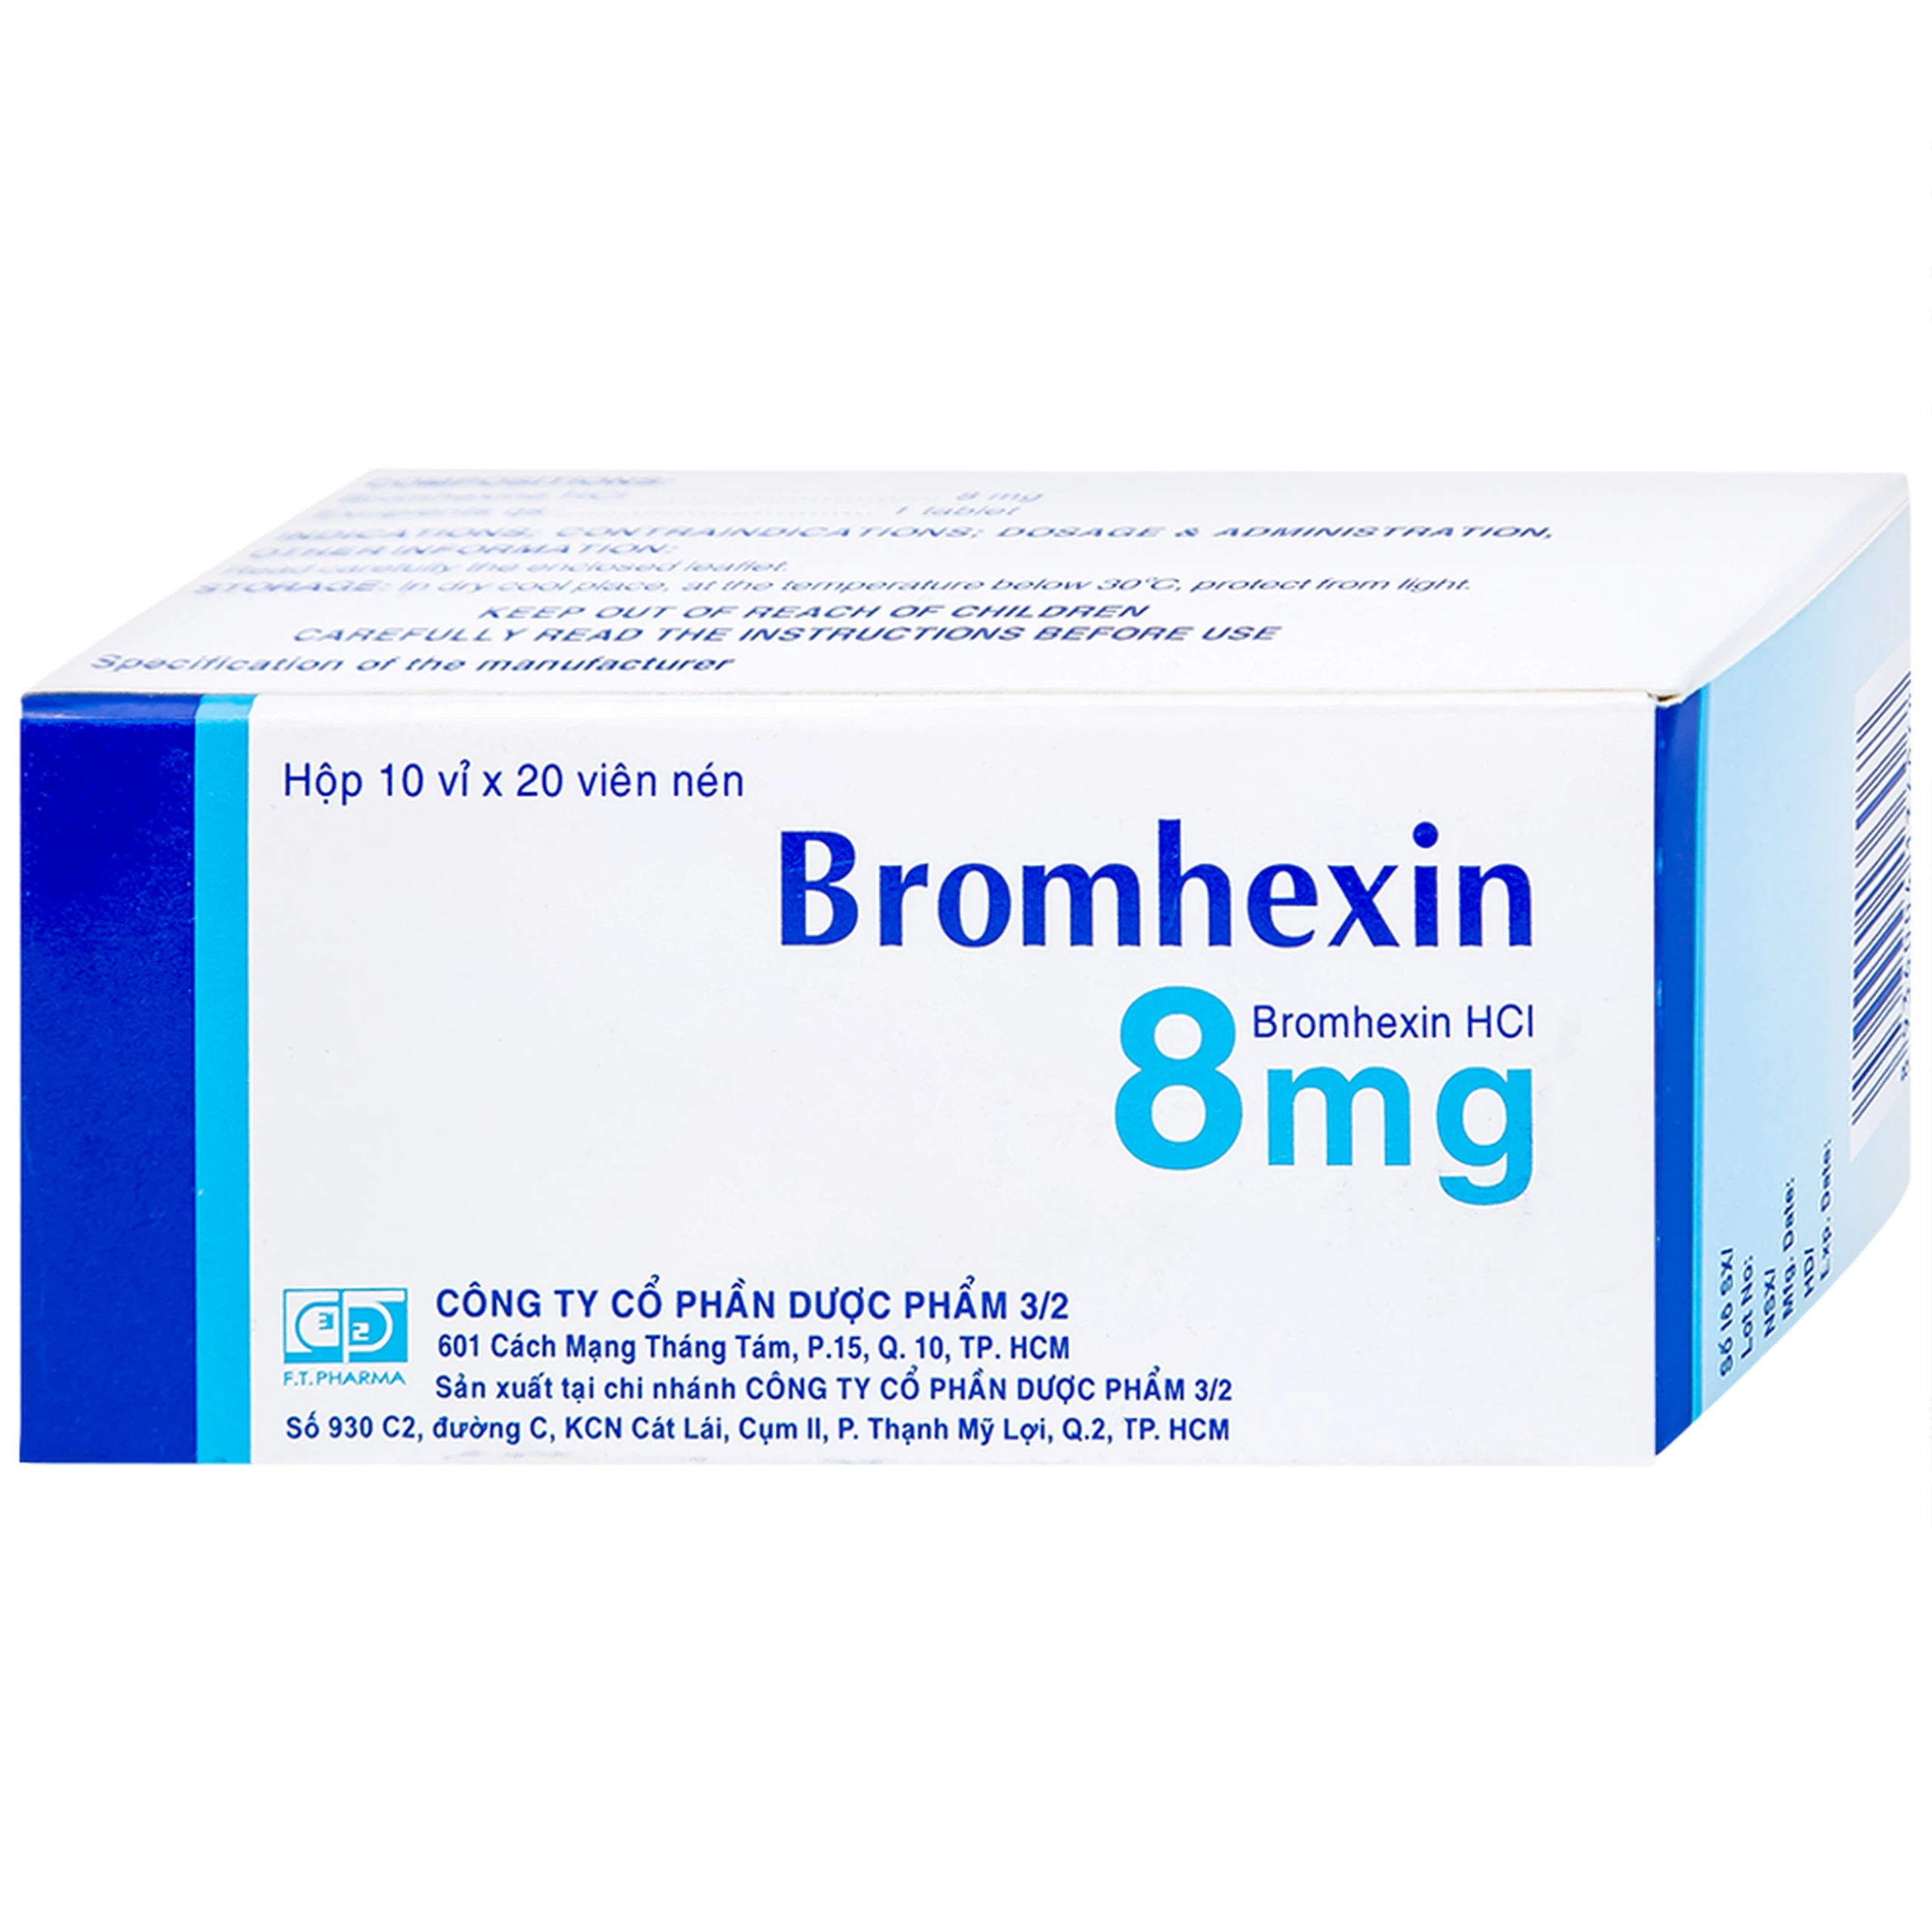 Thuốc Bromhexin 8mg Dược 3-2 tan đàm trong viêm khí phế quản, viêm phế quản mạn tính (10 vỉ x 20 viên)